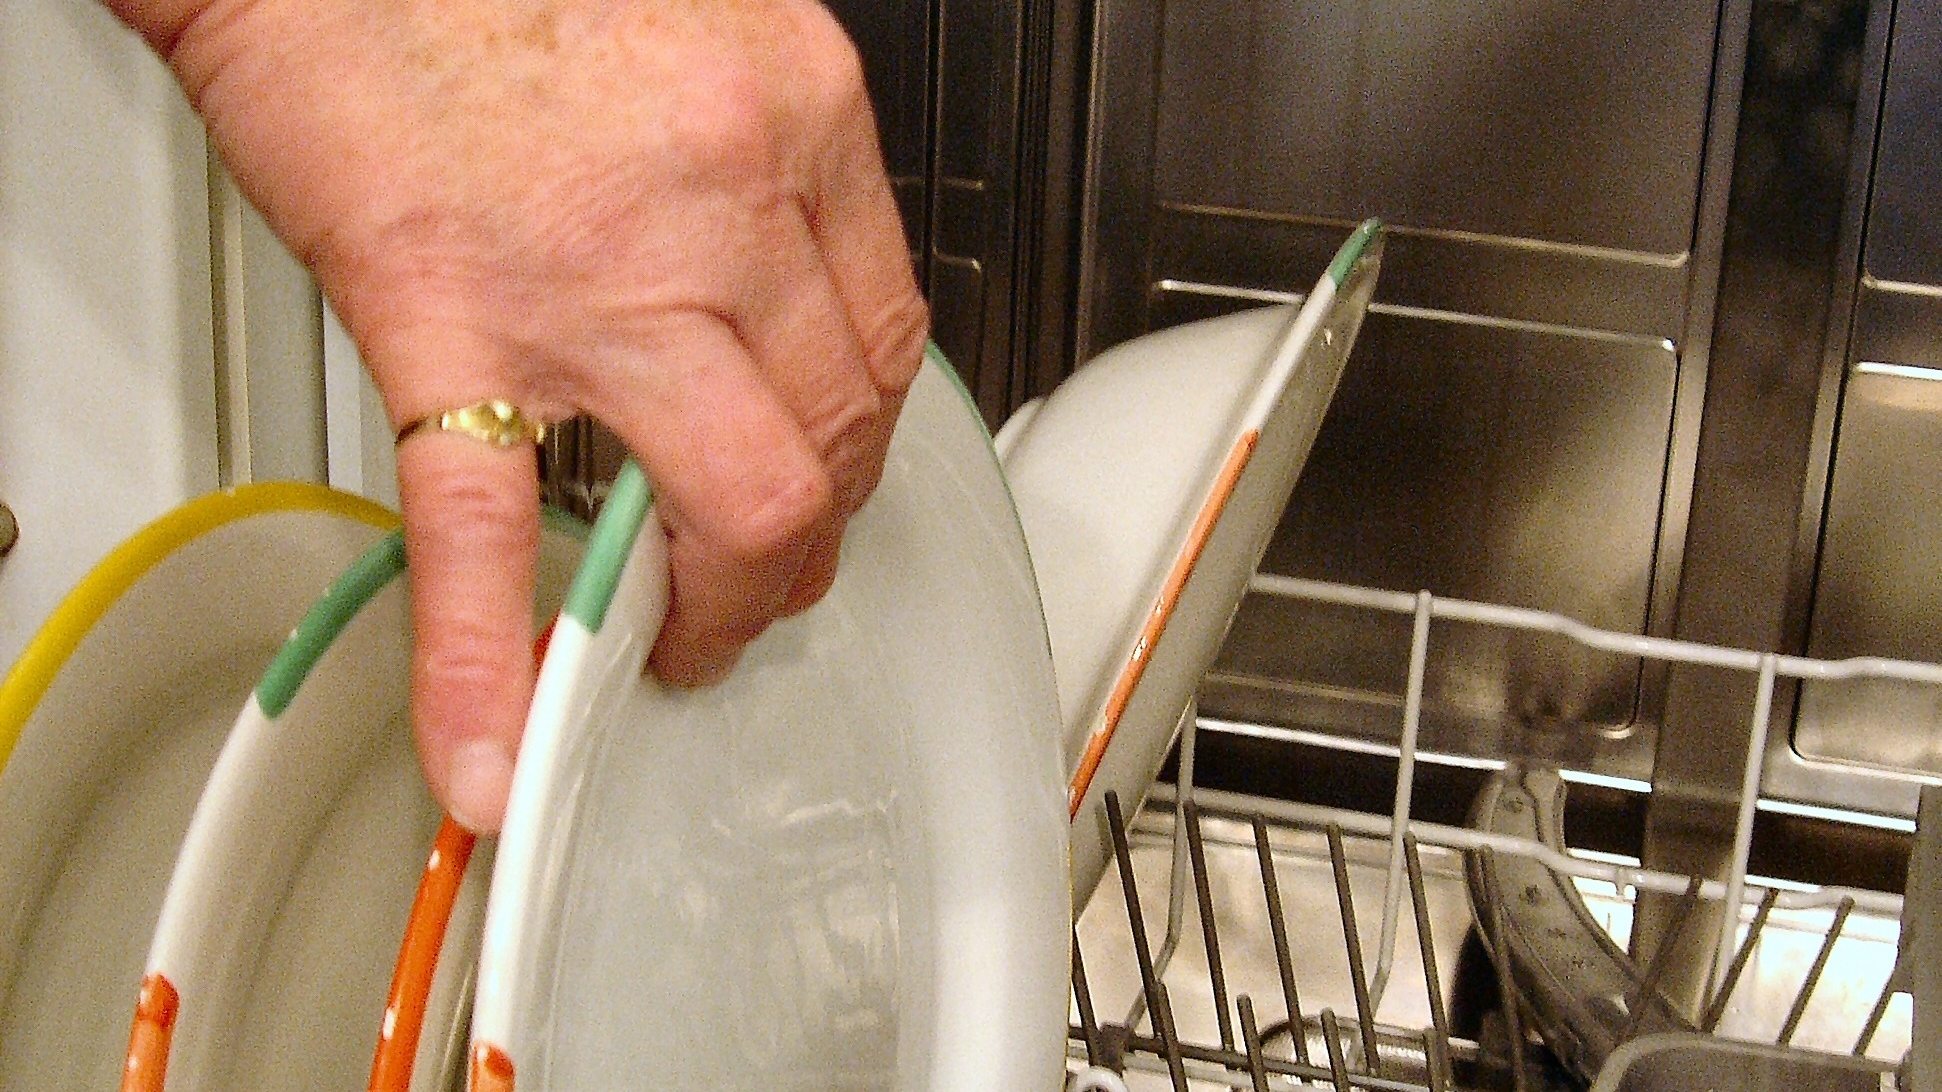 Начала мыть посуду